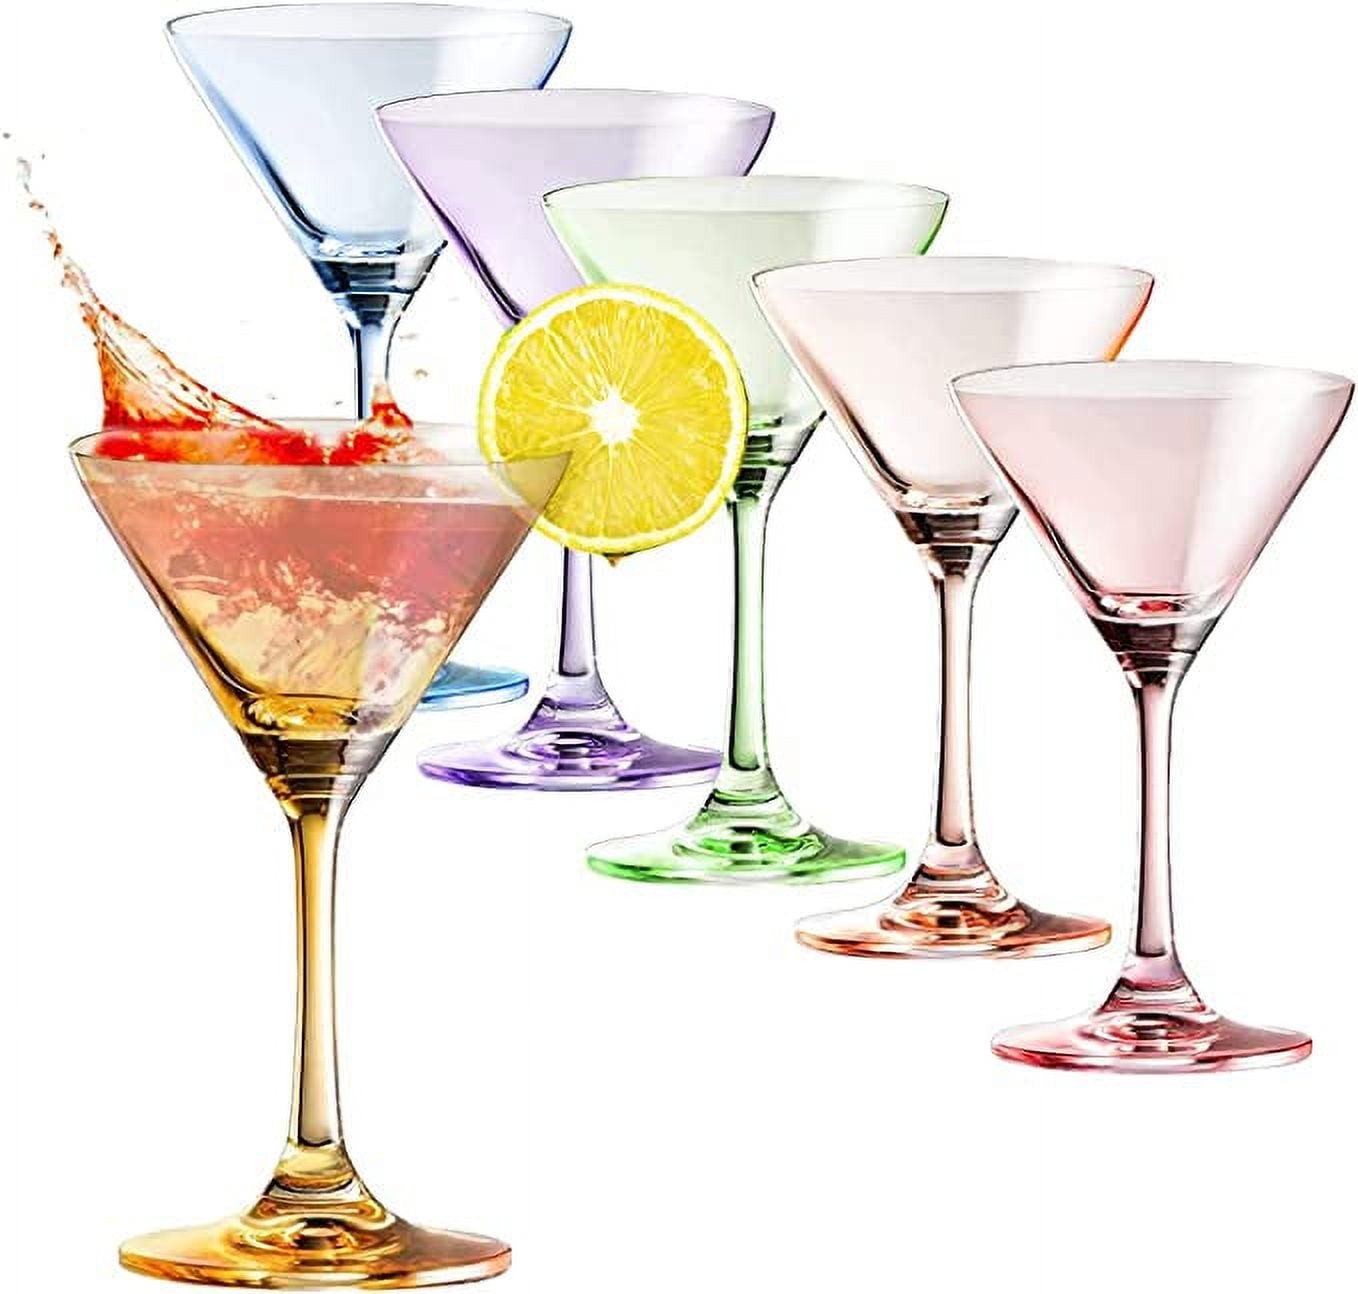 wookgreat Martini Glasses, Set of 6 Vintage Cocktail Glasses, 8oz Crystal  Stemless Margarita Glasses…See more wookgreat Martini Glasses, Set of 6